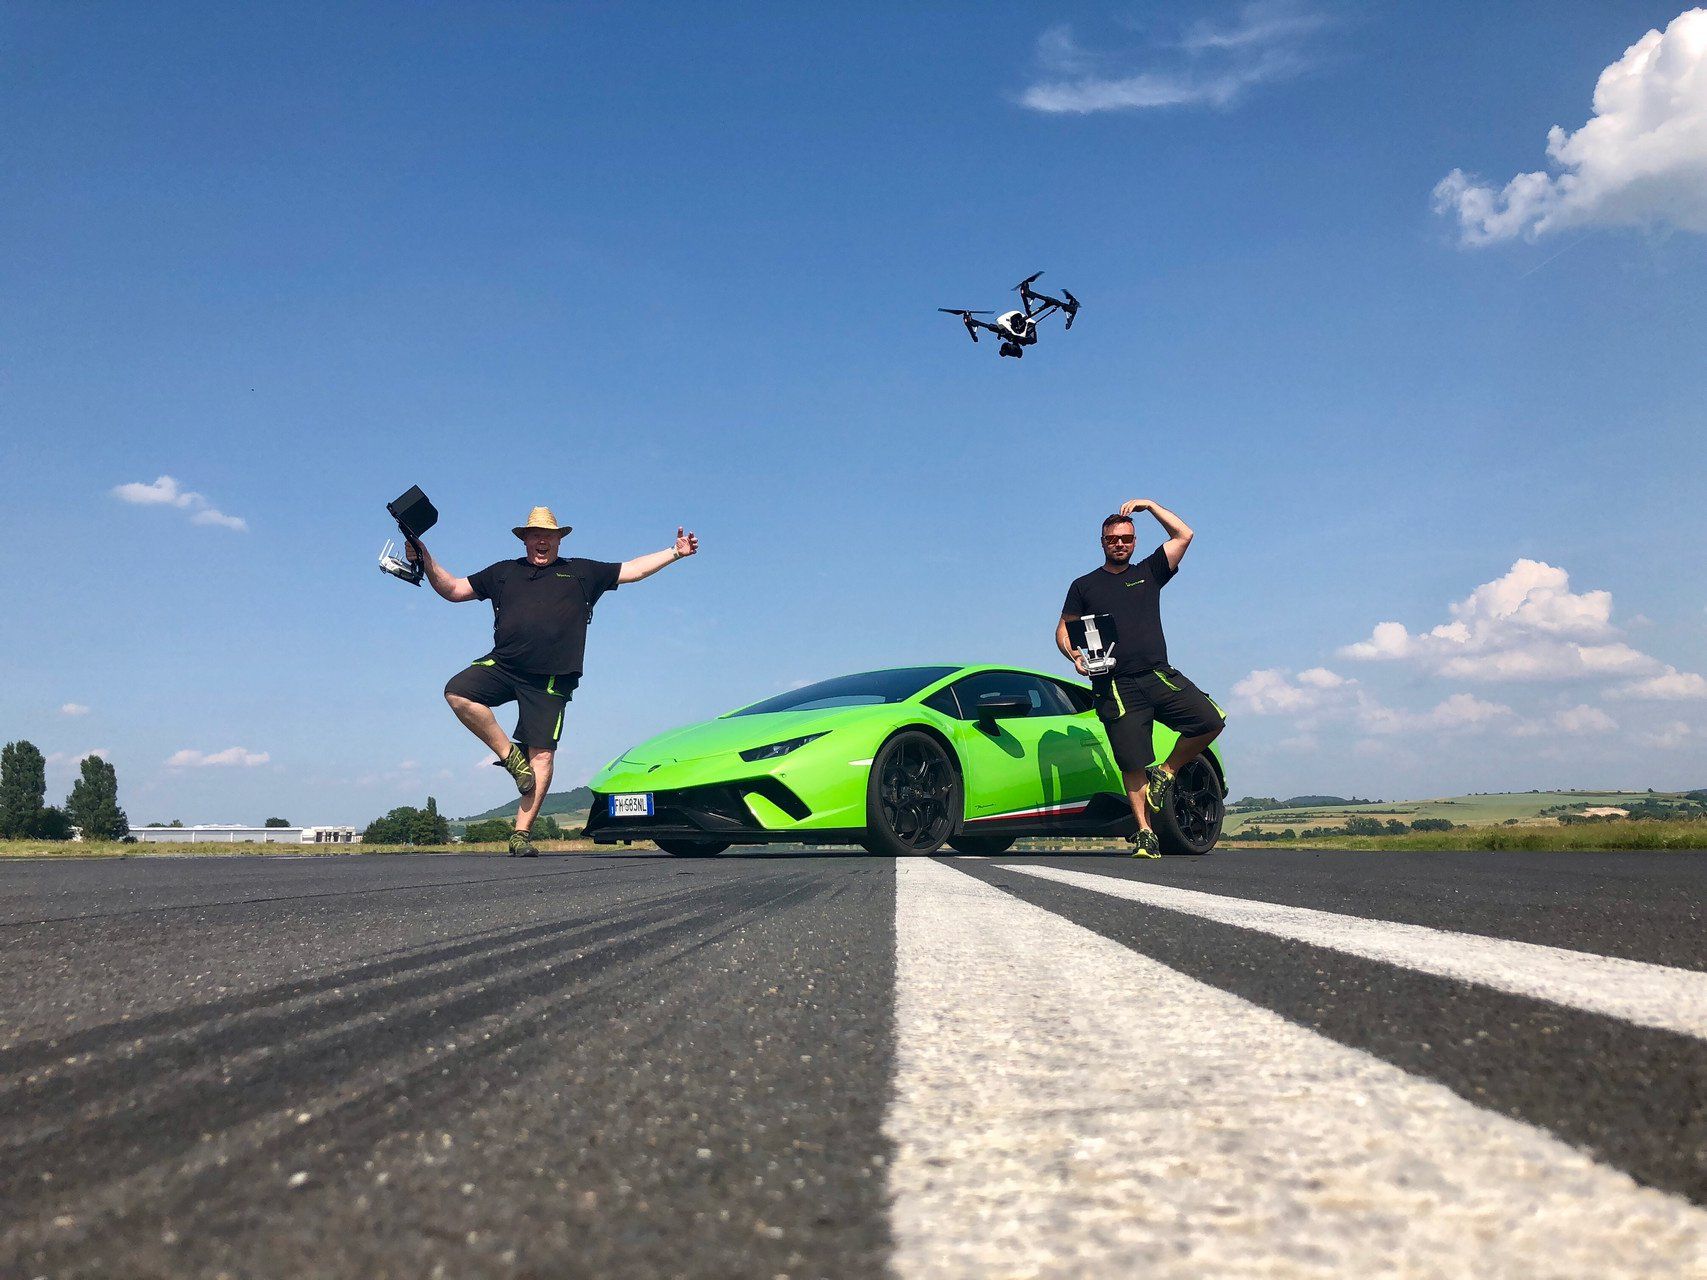 Filmdrohne schwebt über Lamborghini, Nils und Robert stehen auf einem Bein